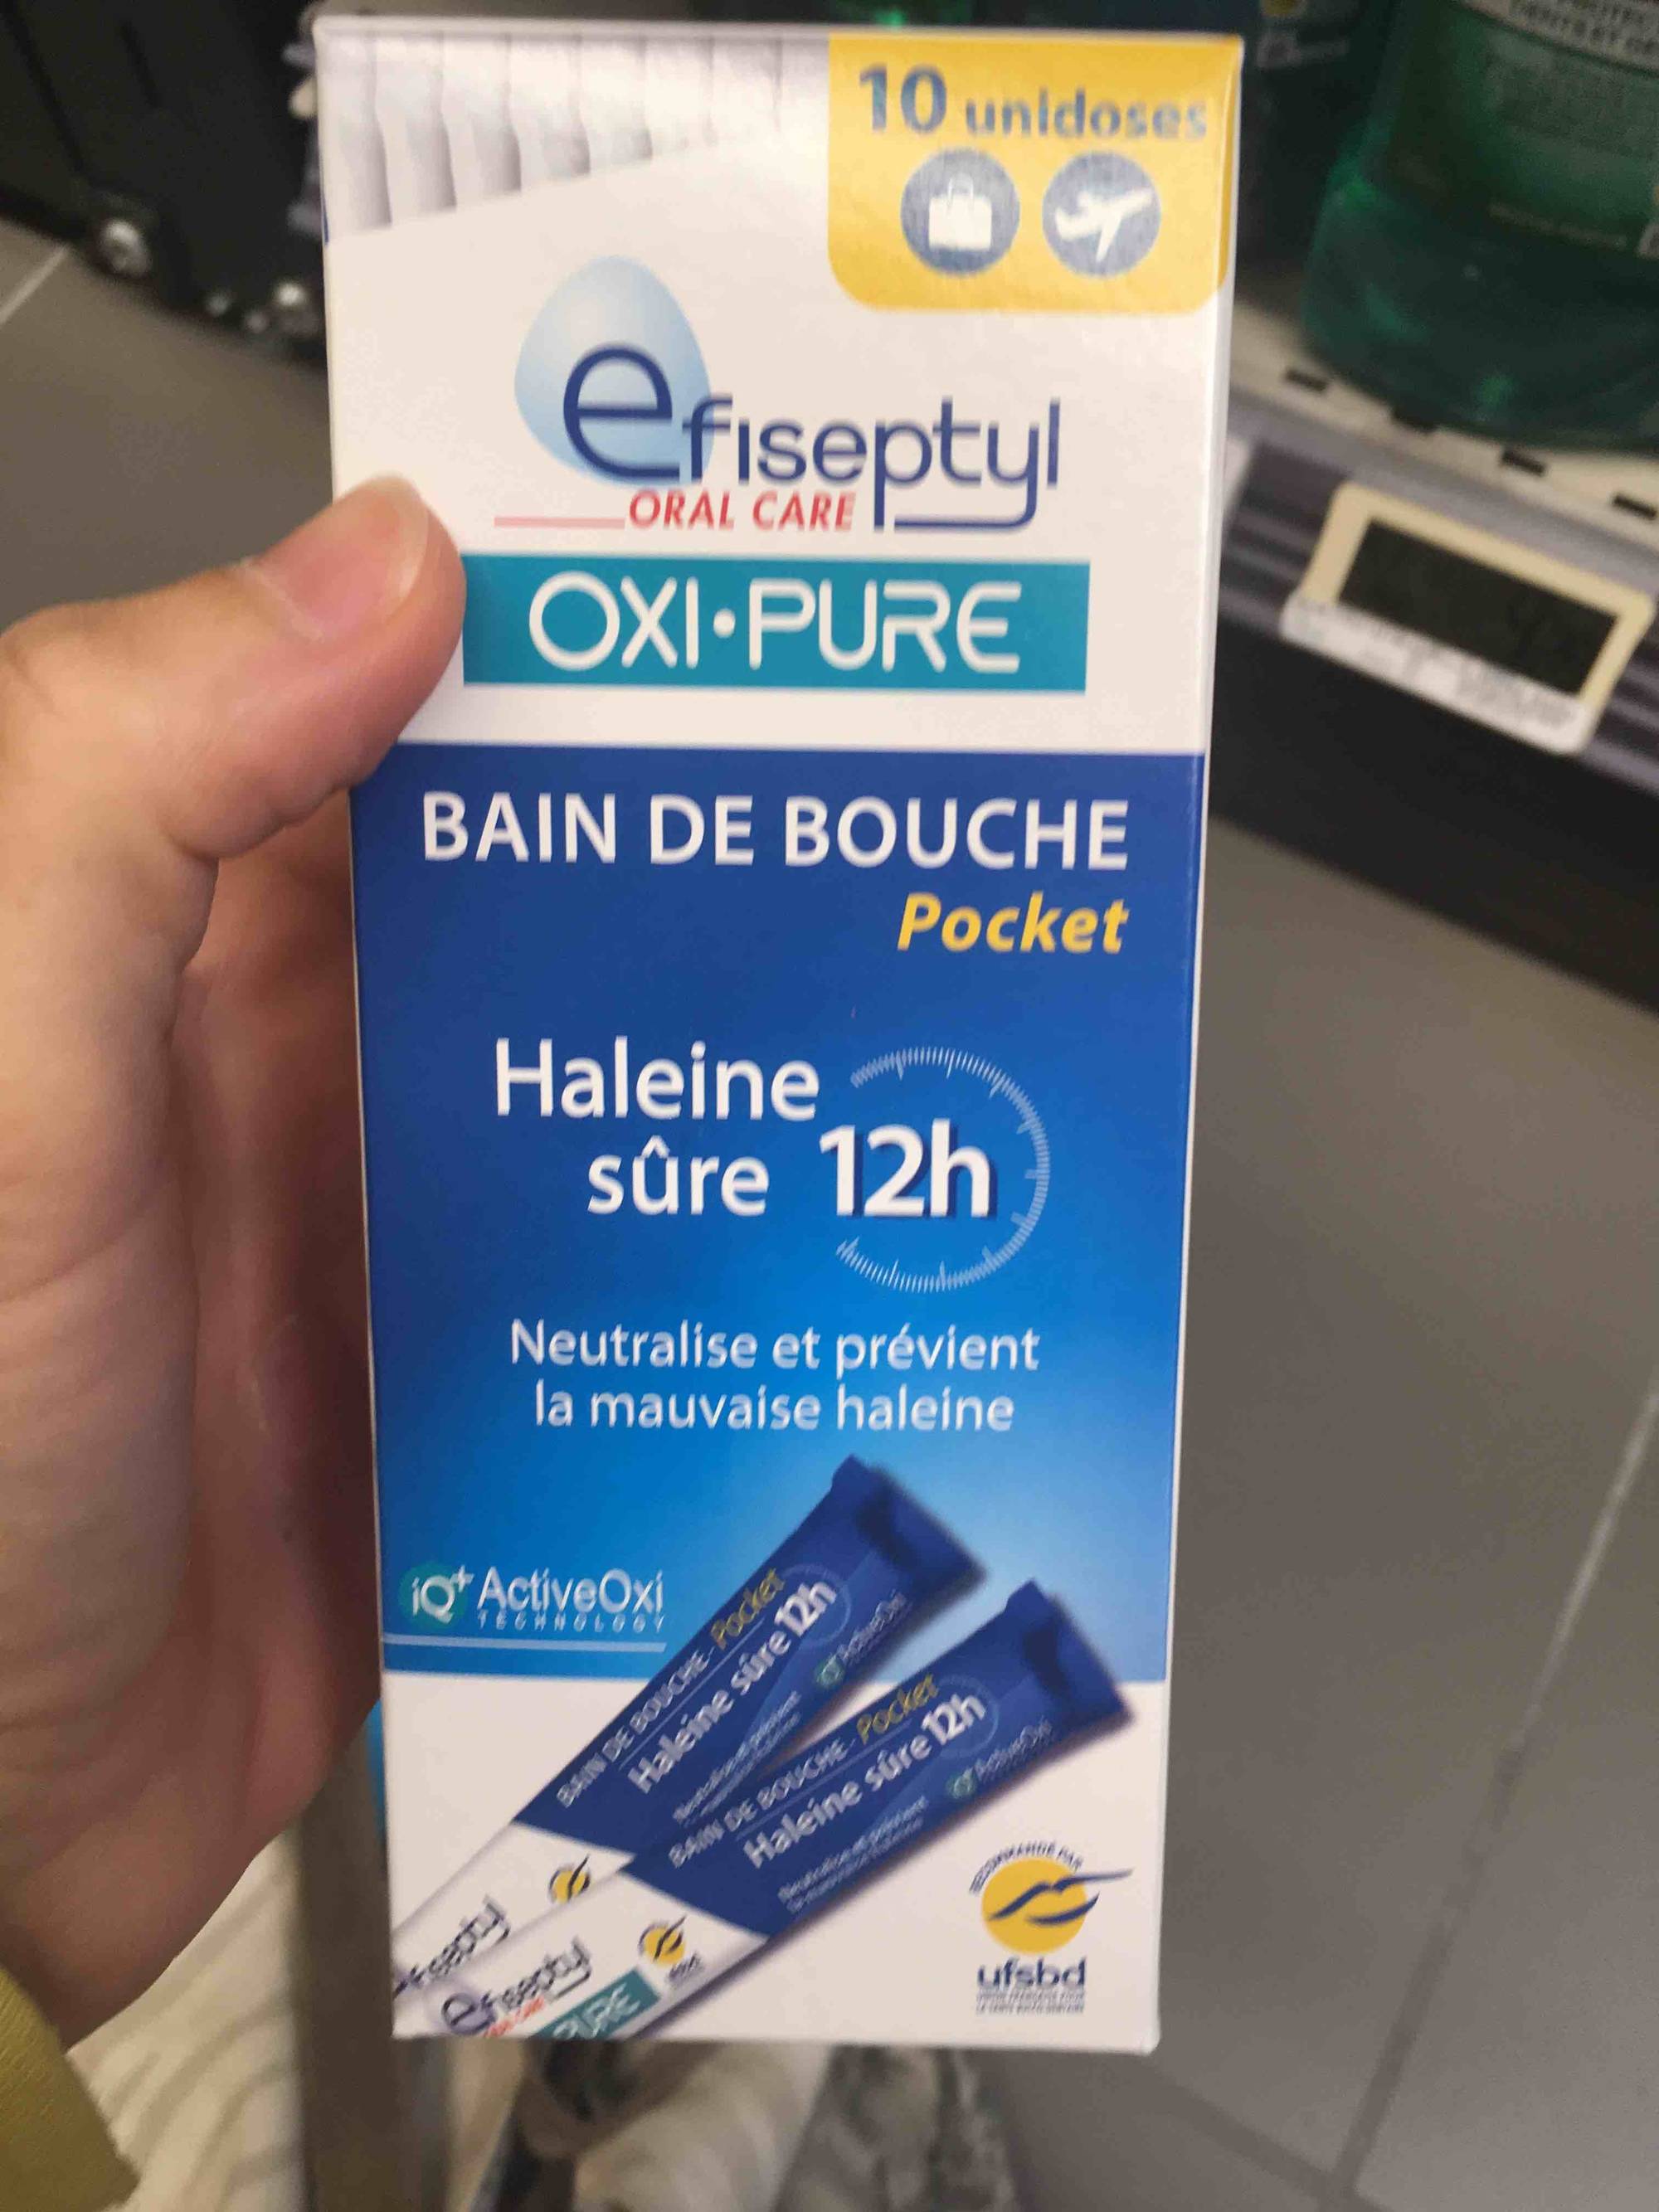 EFISEPTYL - Oxi-pure - Bain de bouche